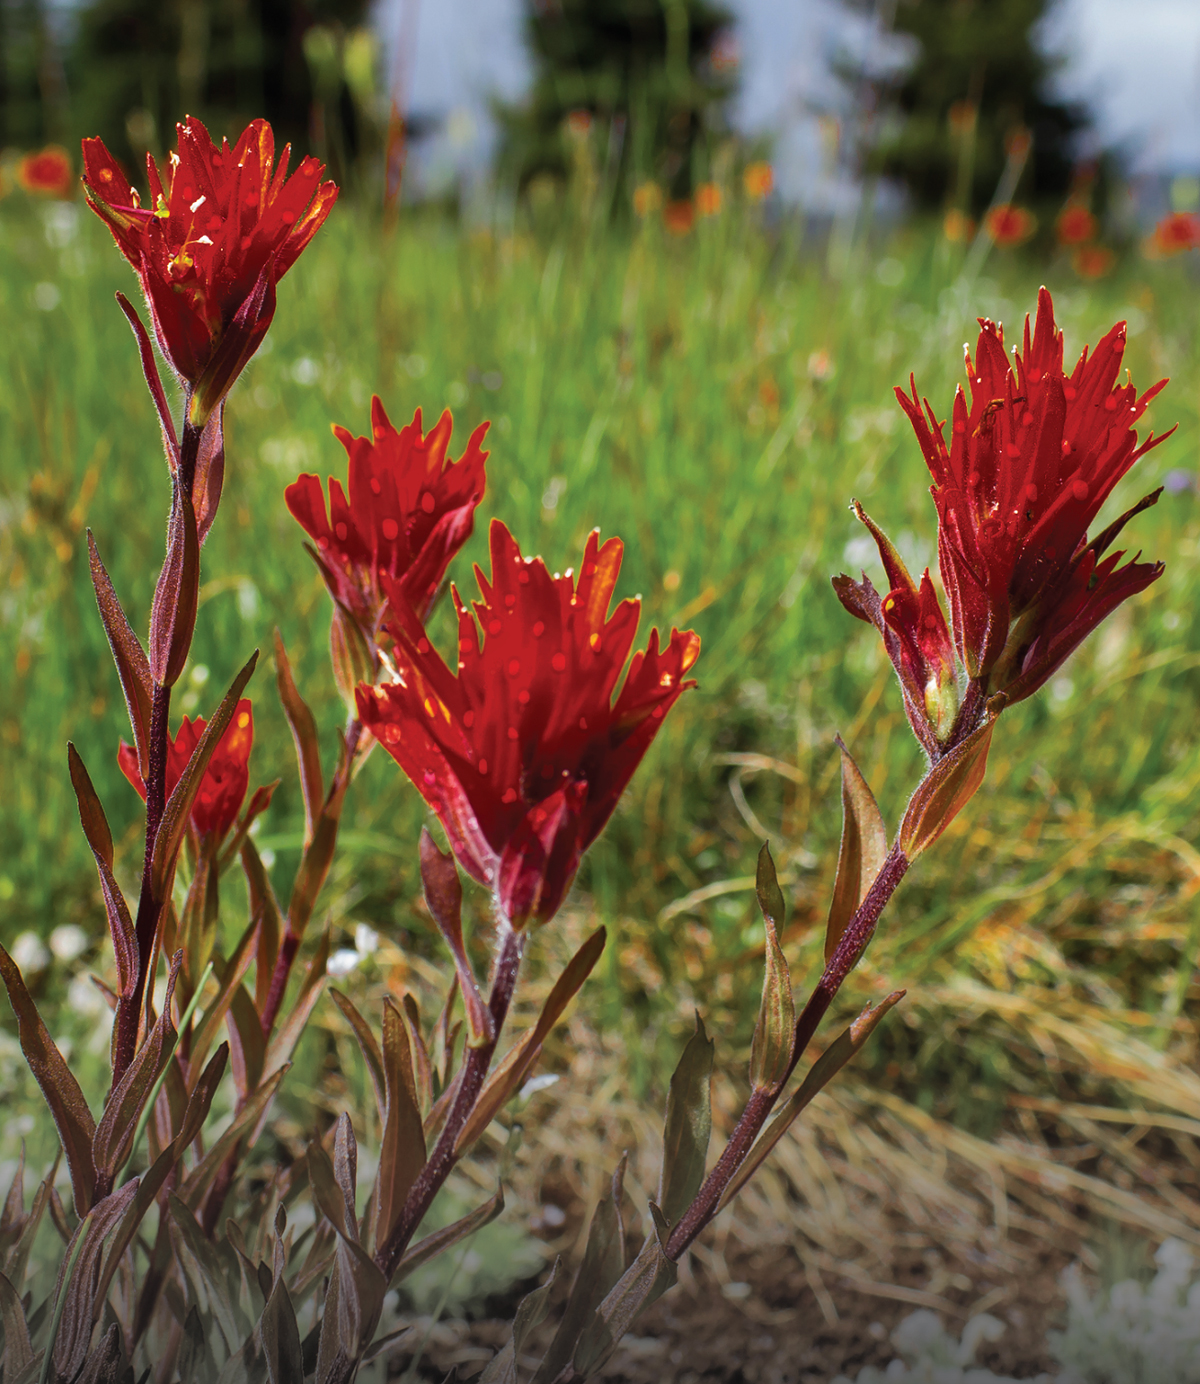 Des fleurs sauvages rouges poussent dans un champ au Canada. Des taches solaires stylisées sont dessinées sur les fleurs.